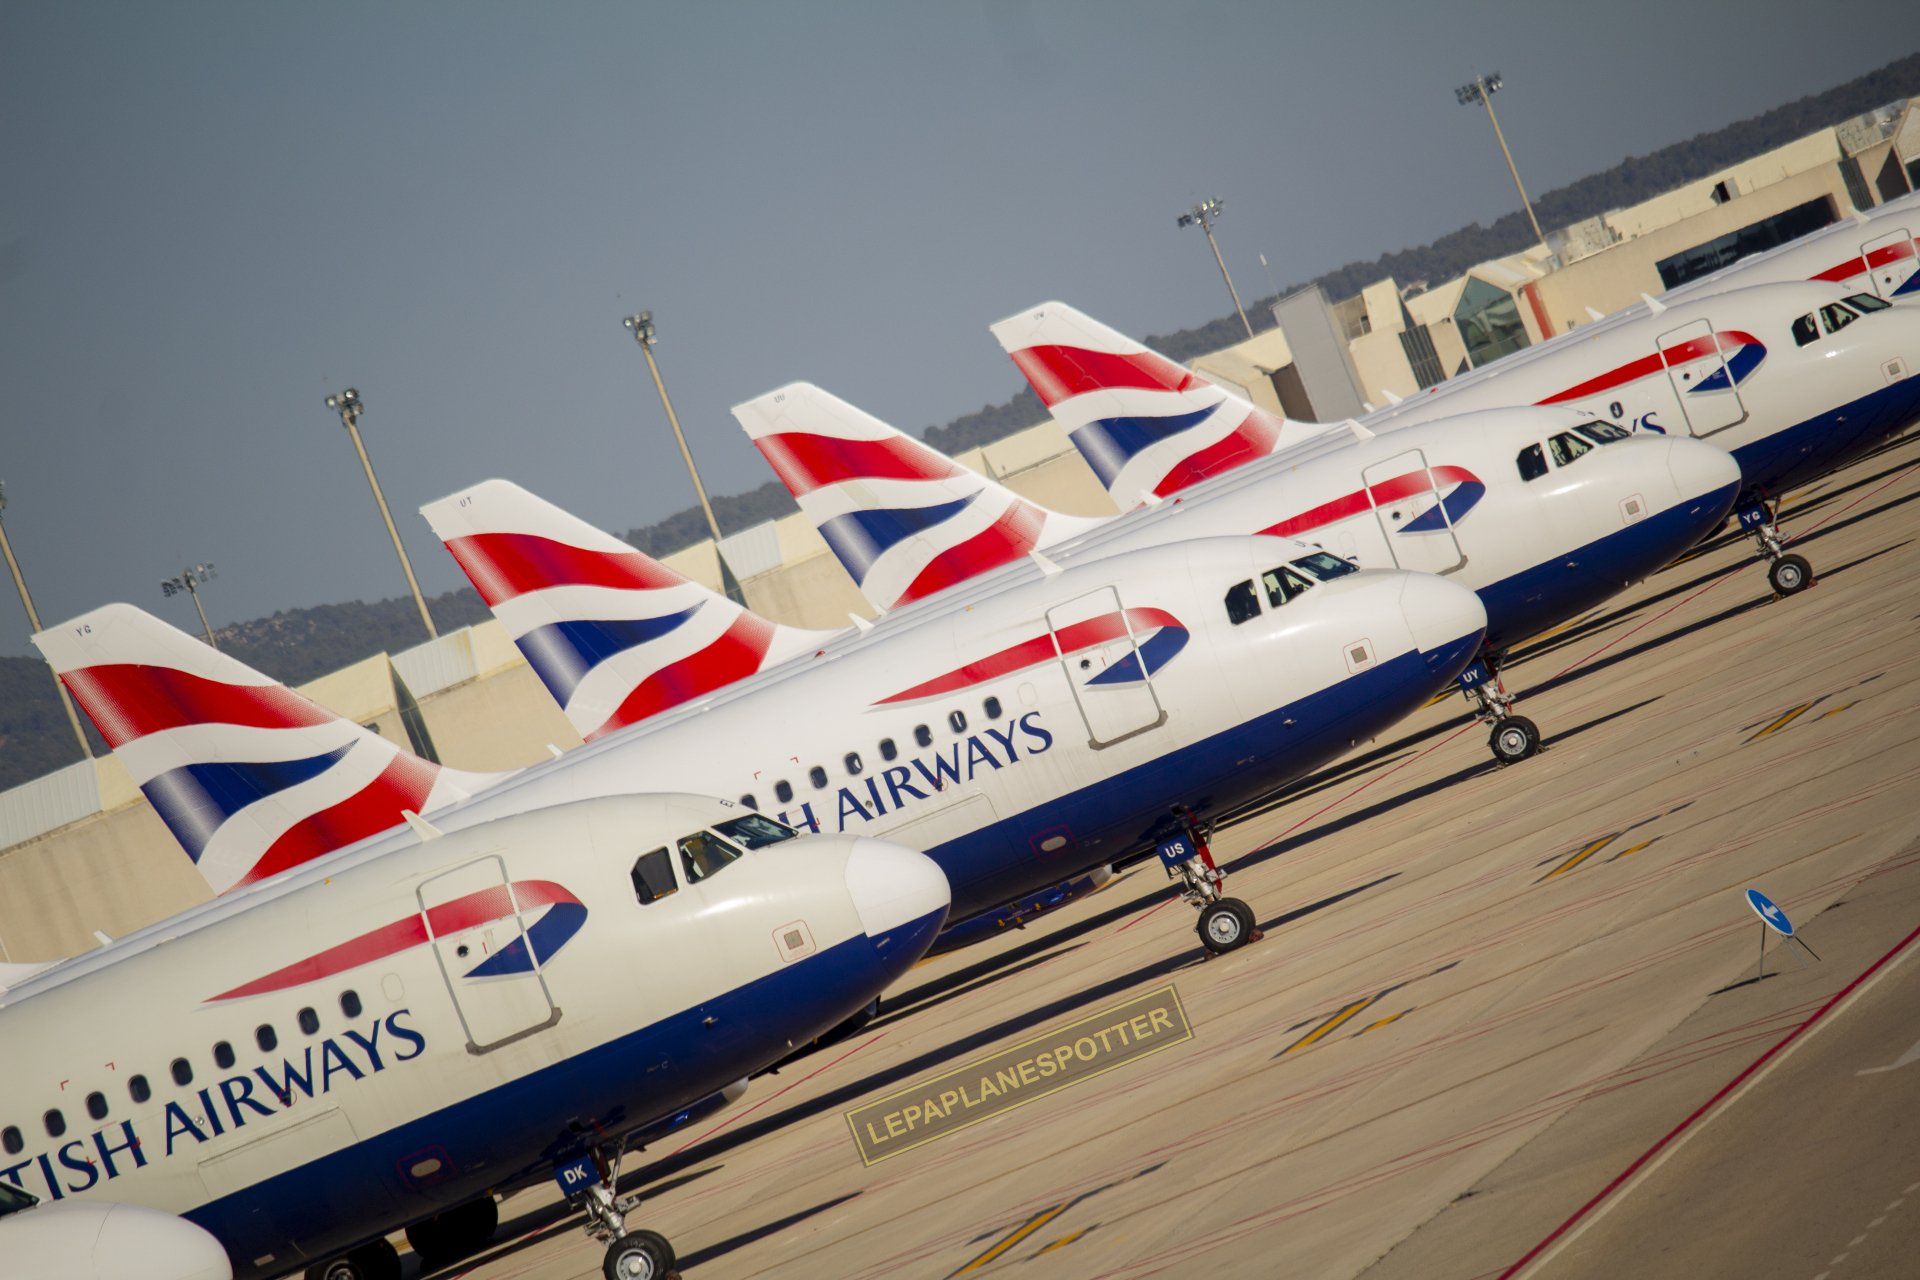 Conjunto de Airbus A320 de British Airways estacionados en fila